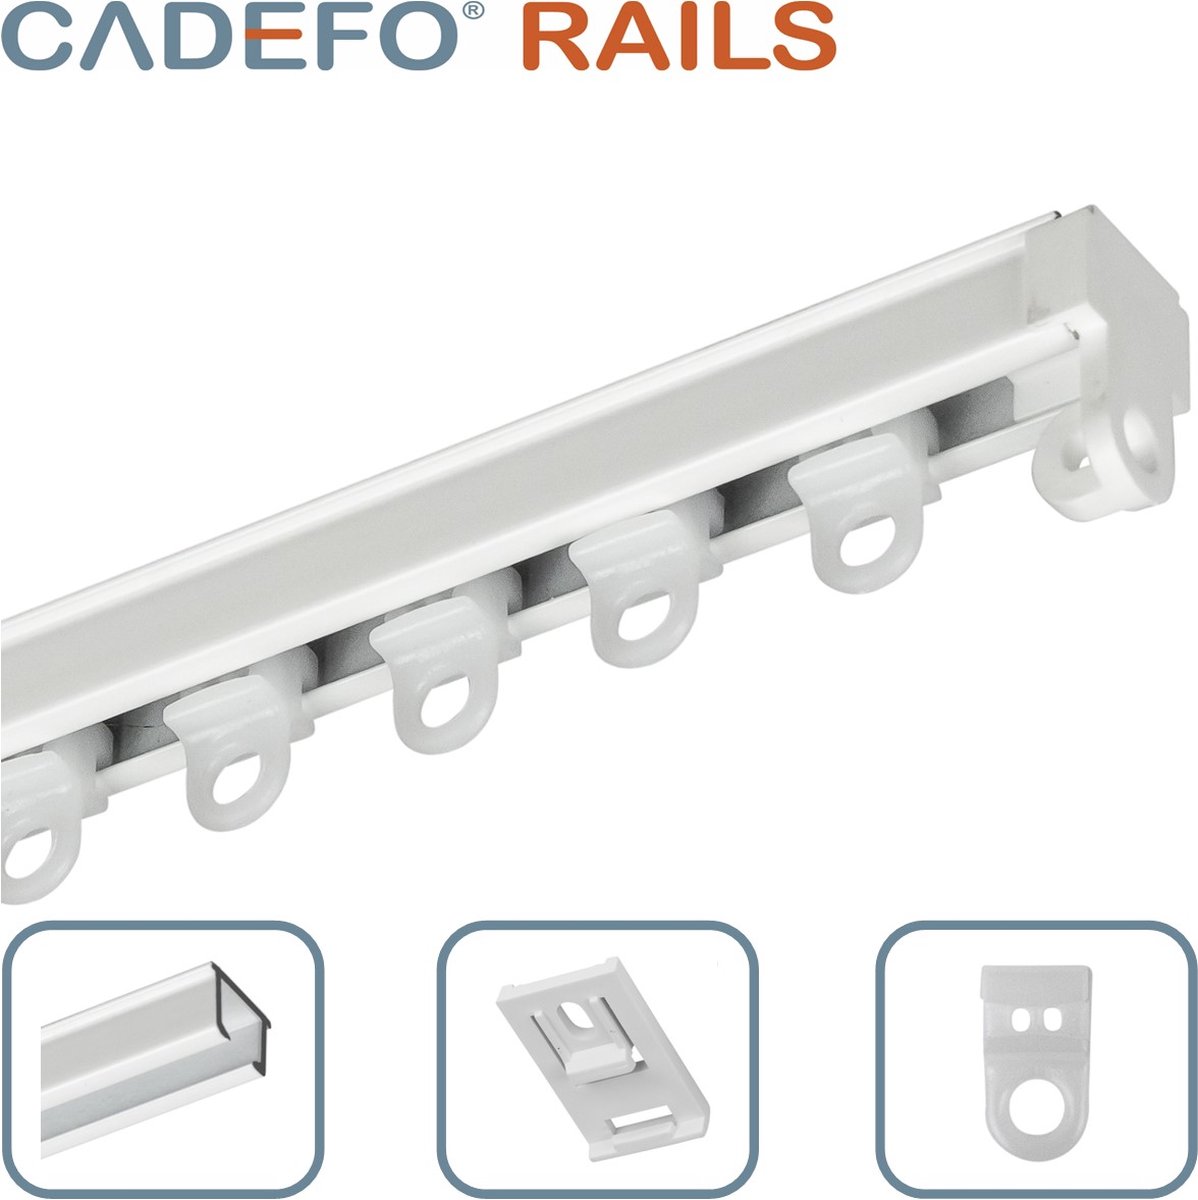 CADEFO RAILS (201 - 250 cm) Gordijnrails - Compleet op maat! - UIT 1 STUK - Leverbaar tot 6 meter - Plafondbevestiging - Lengte 217 cm